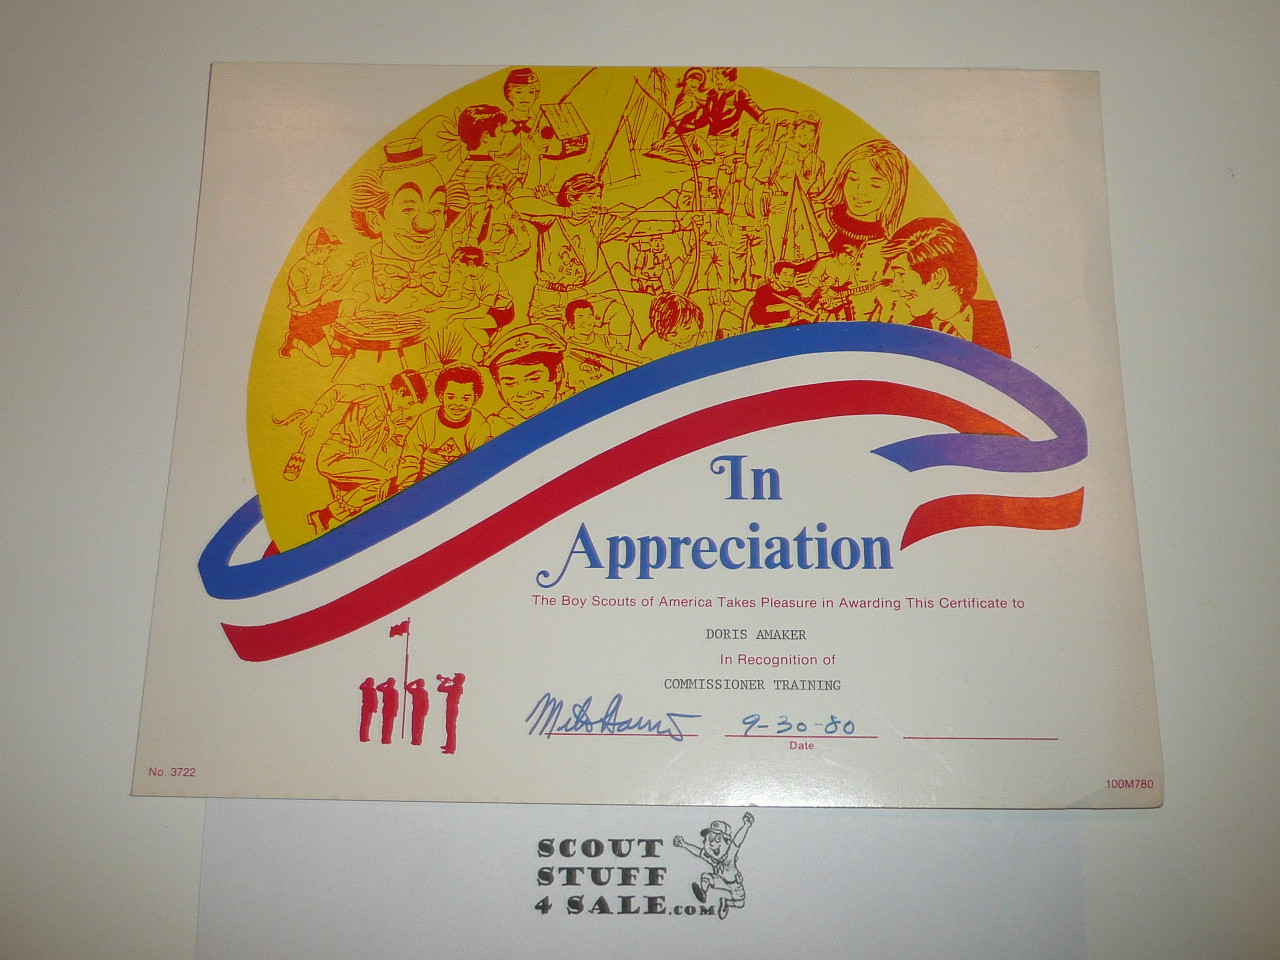 1980 Certificate of Appreciation, presented